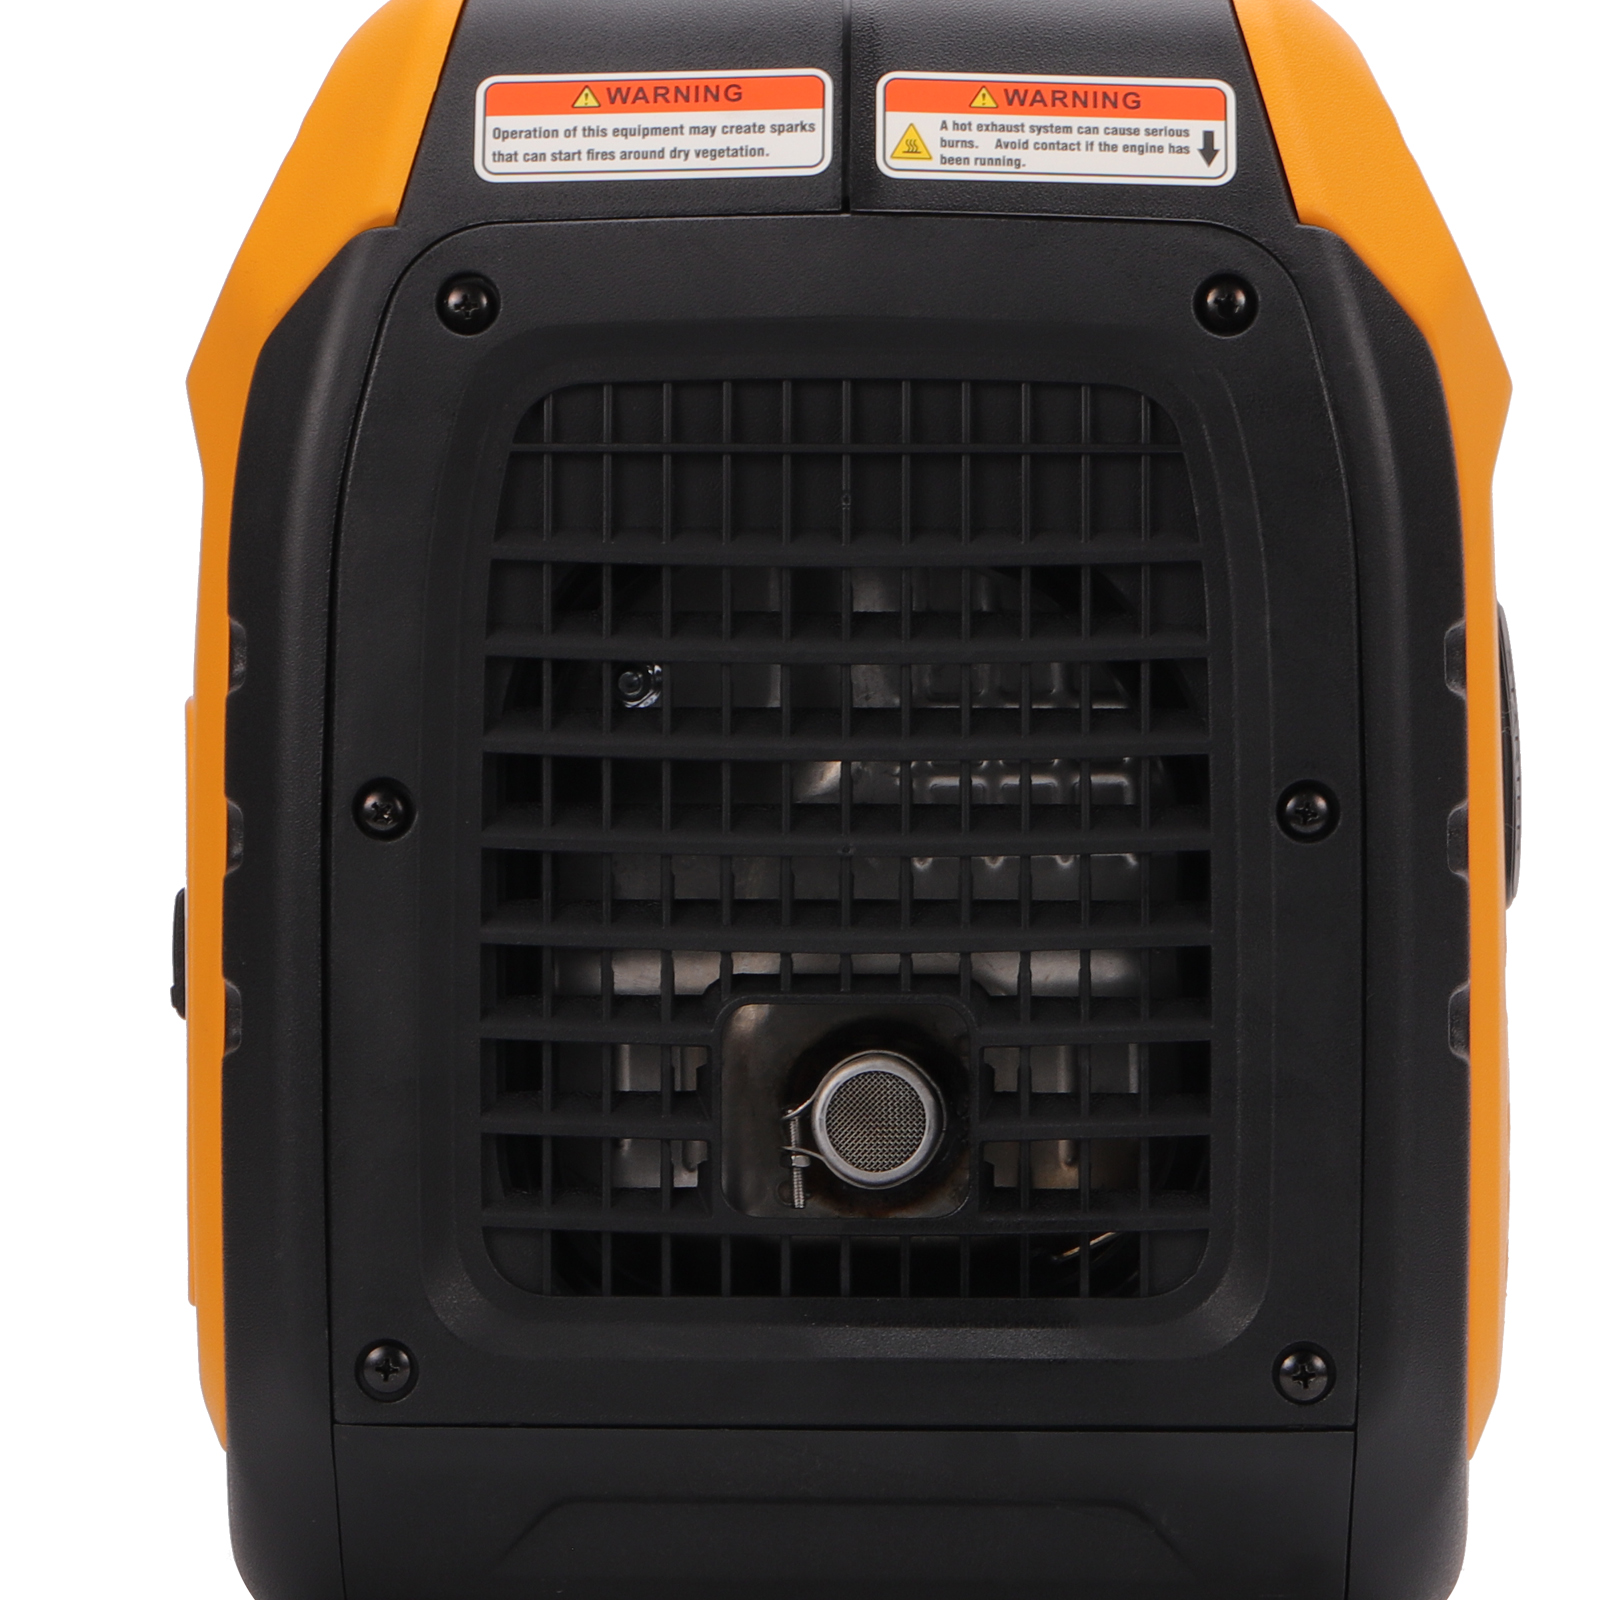 3500 Watt Portable Inverter Generator Power Equipment for RV Travel Home Backup